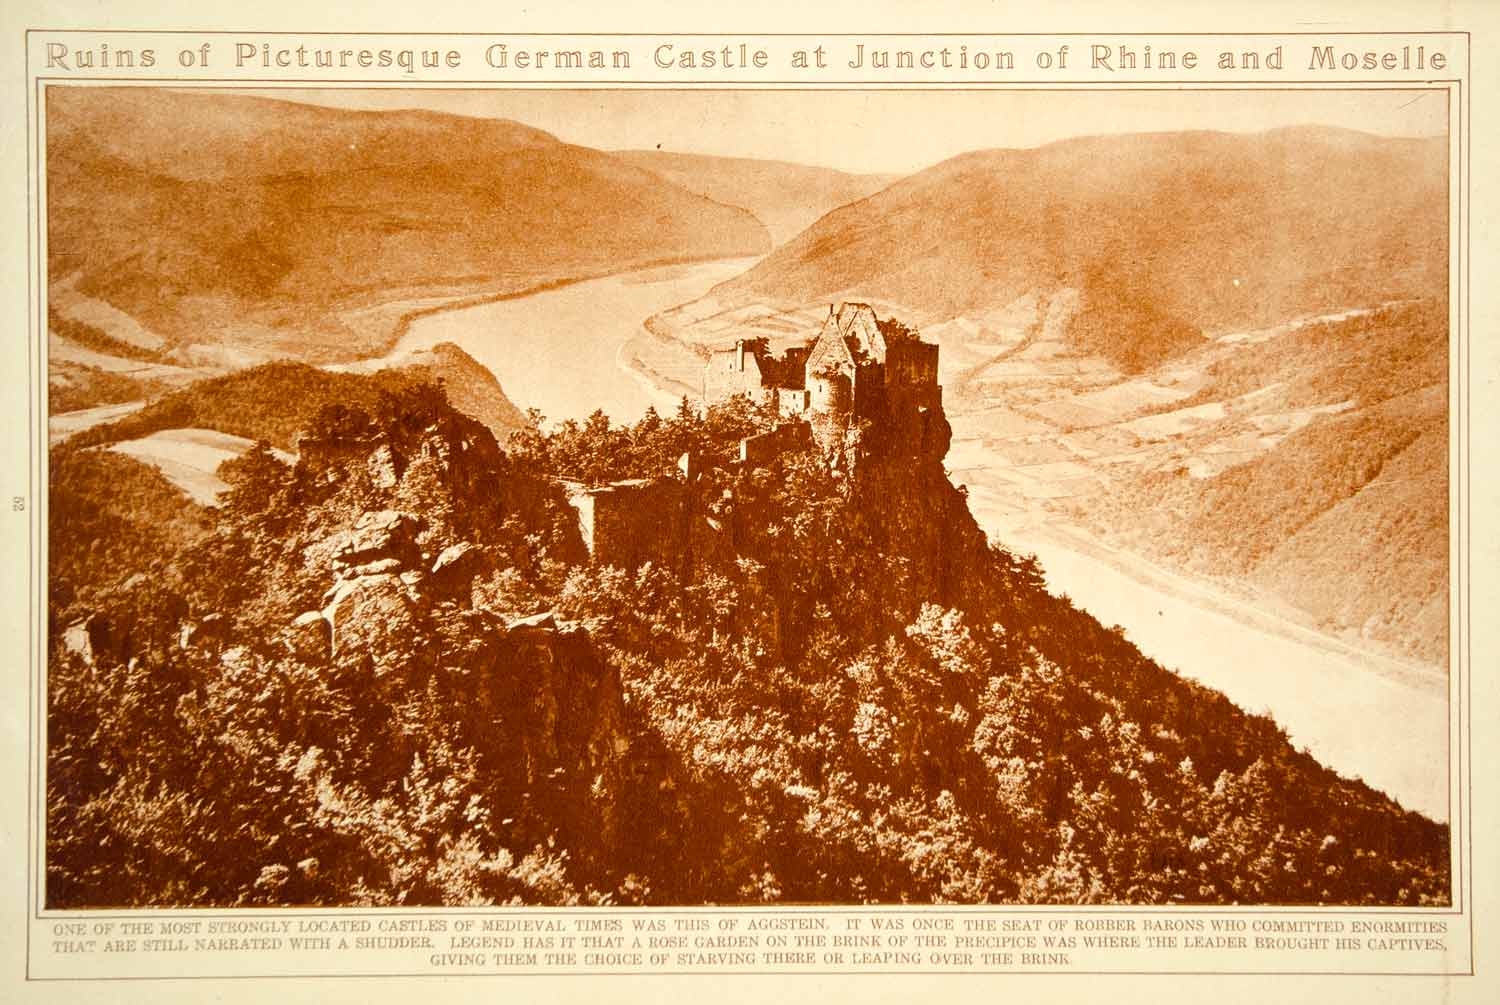 1923 Rotogravure Aggstein Castle Ruins Danube River Austria Historic Image View